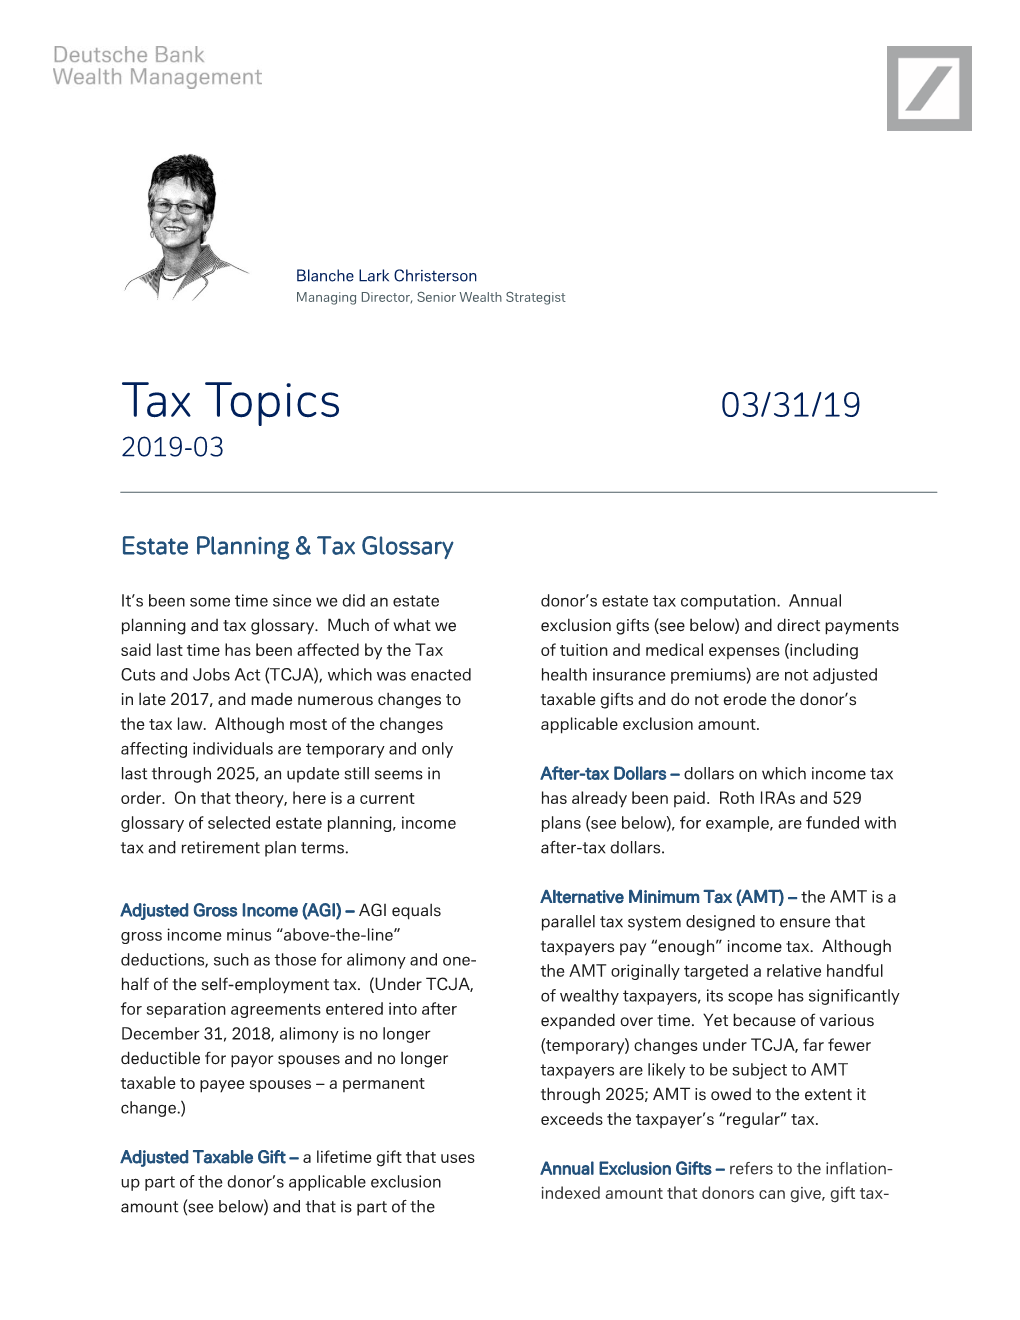 Tax Topics 03/31/19 2019-03